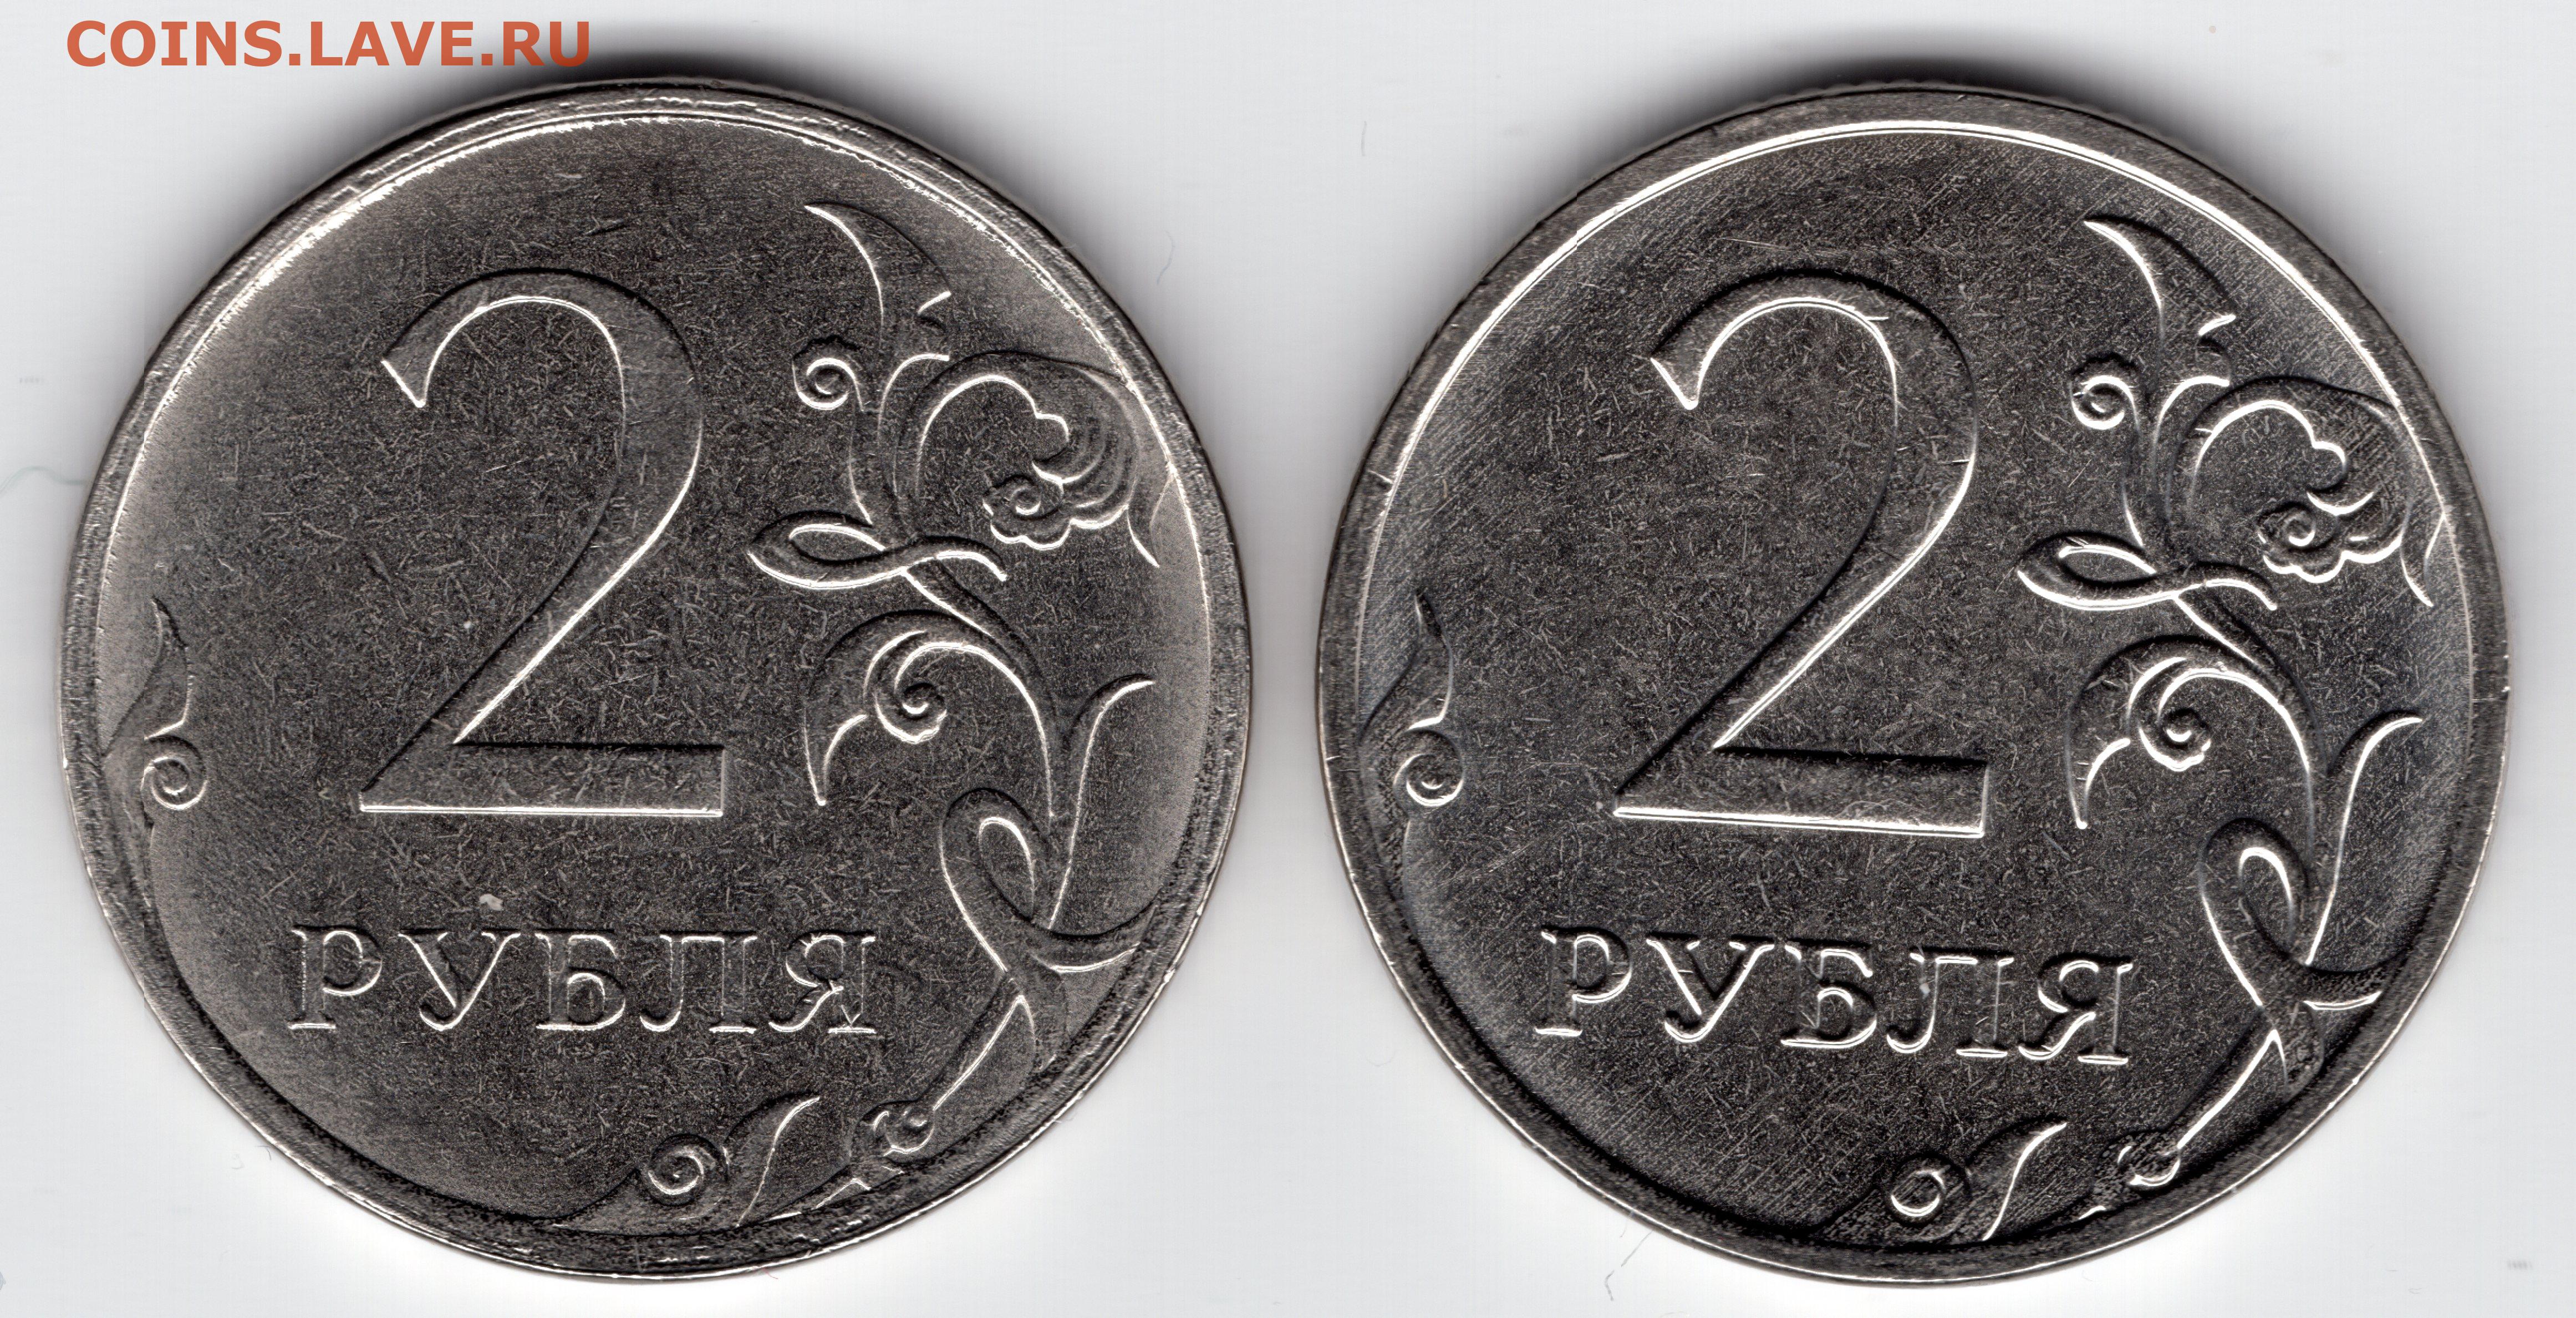 2 рубля 80 копеек. Монета два рубля. Брак монеты 5 рублей 2009г. 1 Рубль шт а шт б. 2 Рубля 2012 с браком.